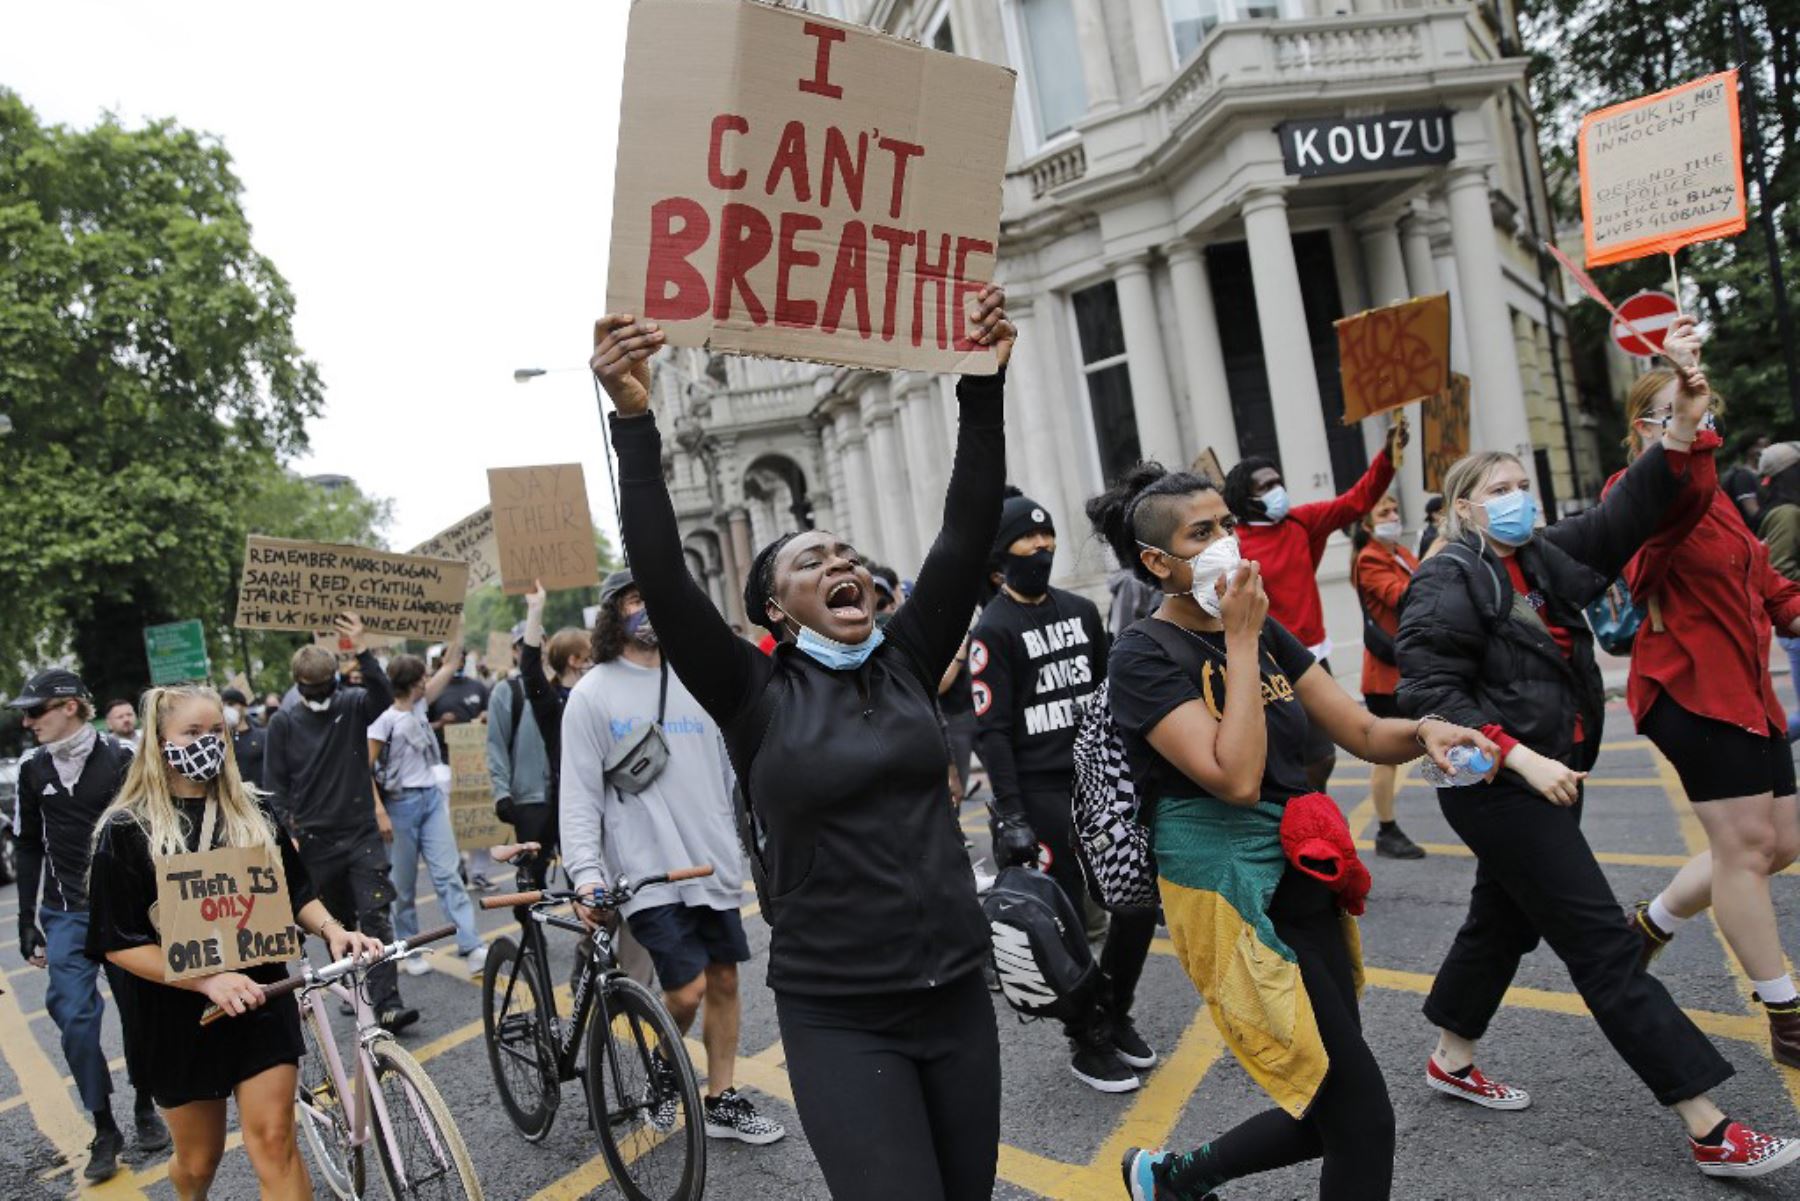 Manifestantes marchan durante una manifestación antirracista en Londres, después de que George Floyd, un hombre negro desarmado murió durante un arresto en Minneapolis, EE. UU.
Foto: AFP